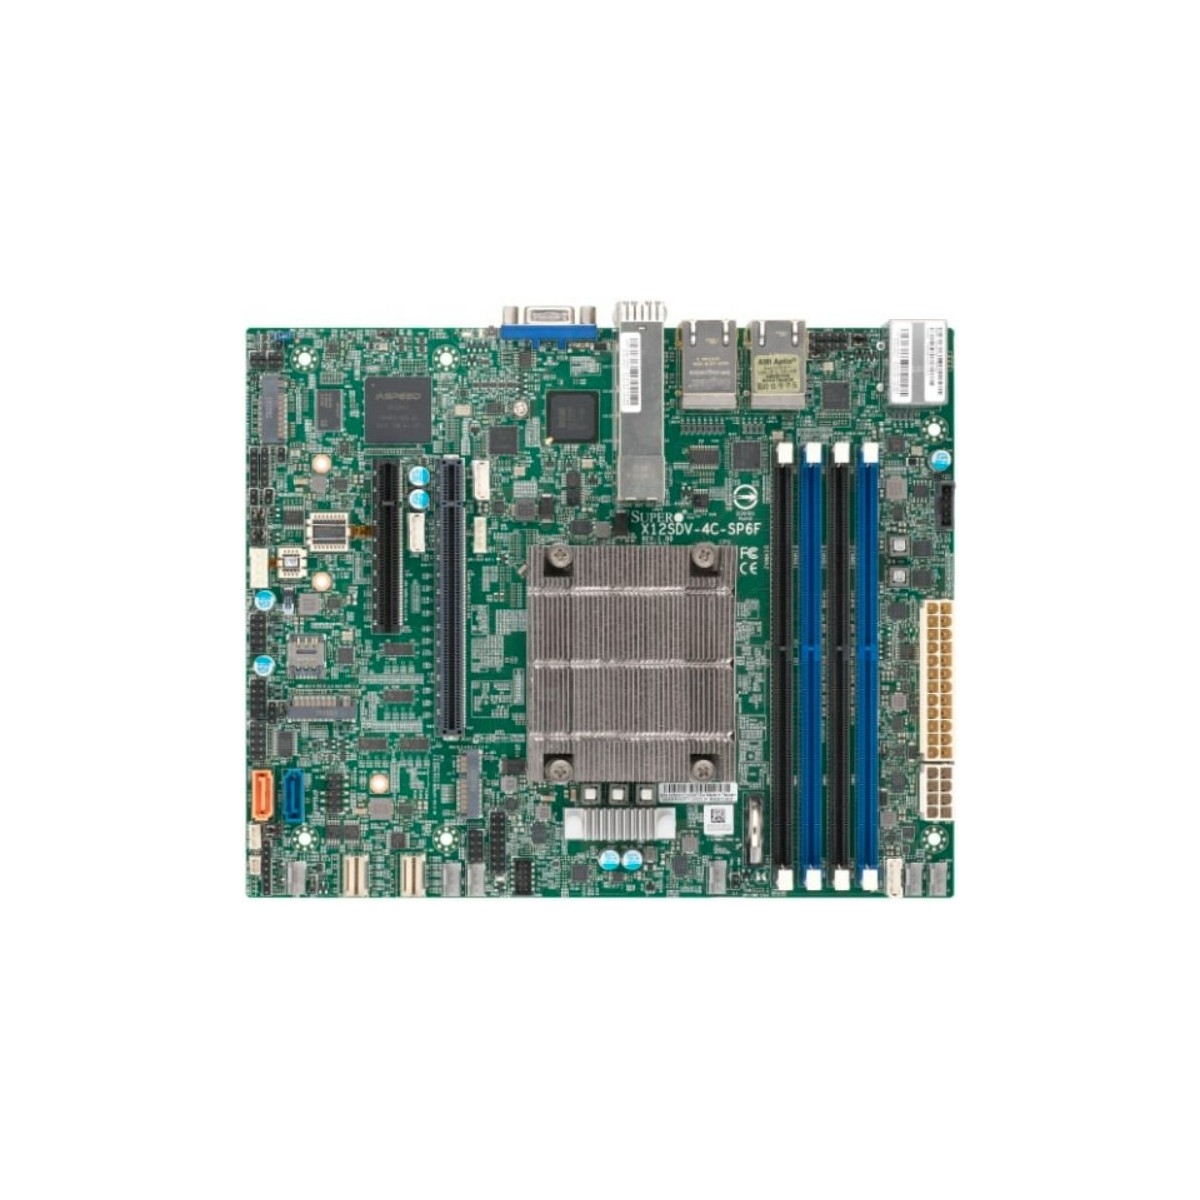 Supermicro Mainboard MBD-X12SDV-4C-SP6F-O Xeon D-XXXX 4Cfrasl XXT